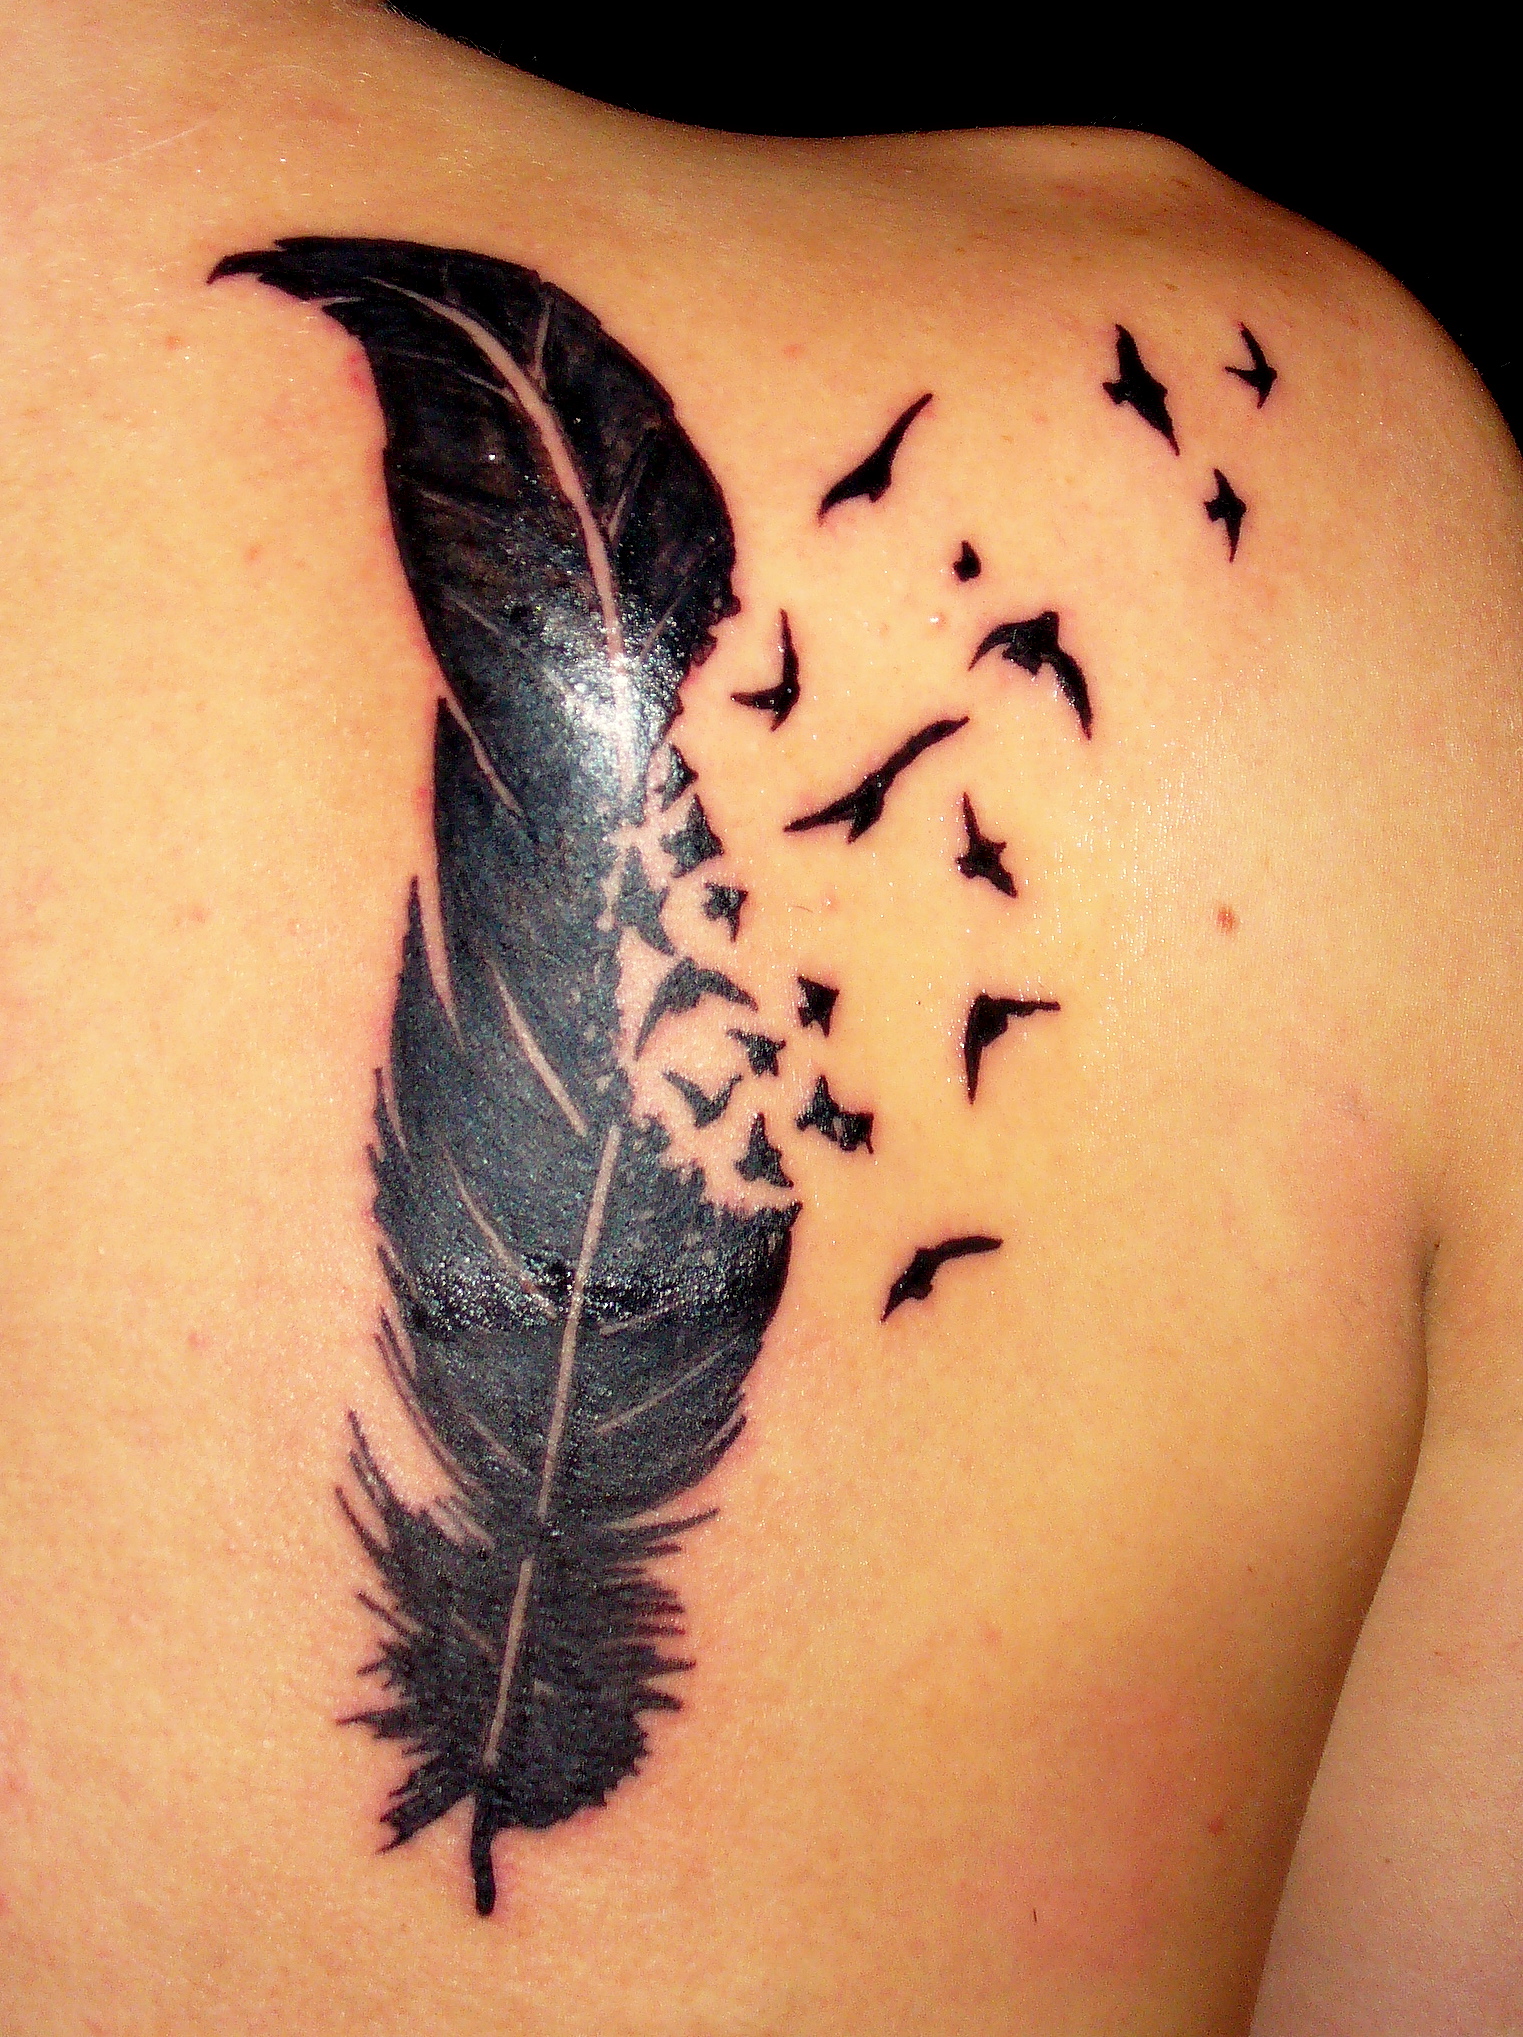 Bird tattoo designs have taken